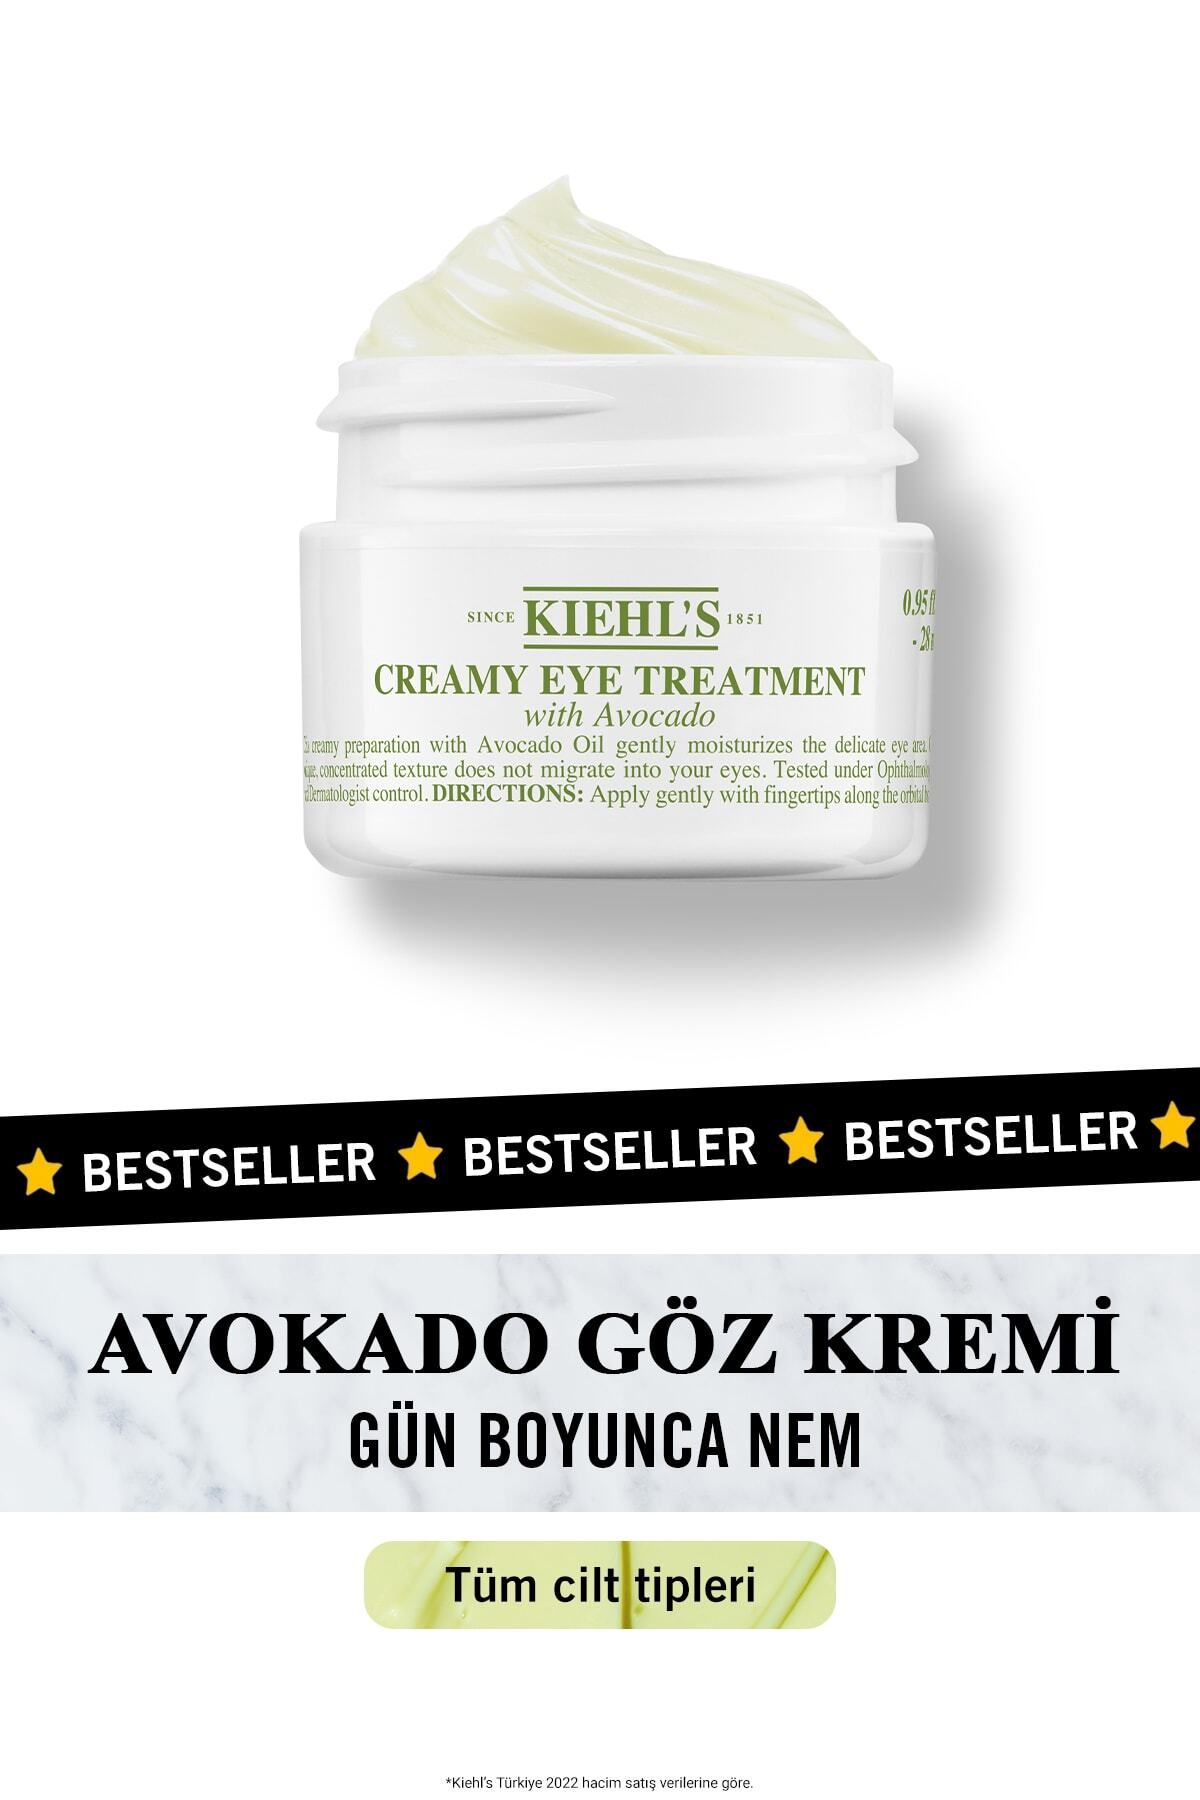 Kiehl's Gün Boyunca Avokado ile Yoğun Nemlendiren Creamy Eye Treatment Göz Kremi 28 Ml.